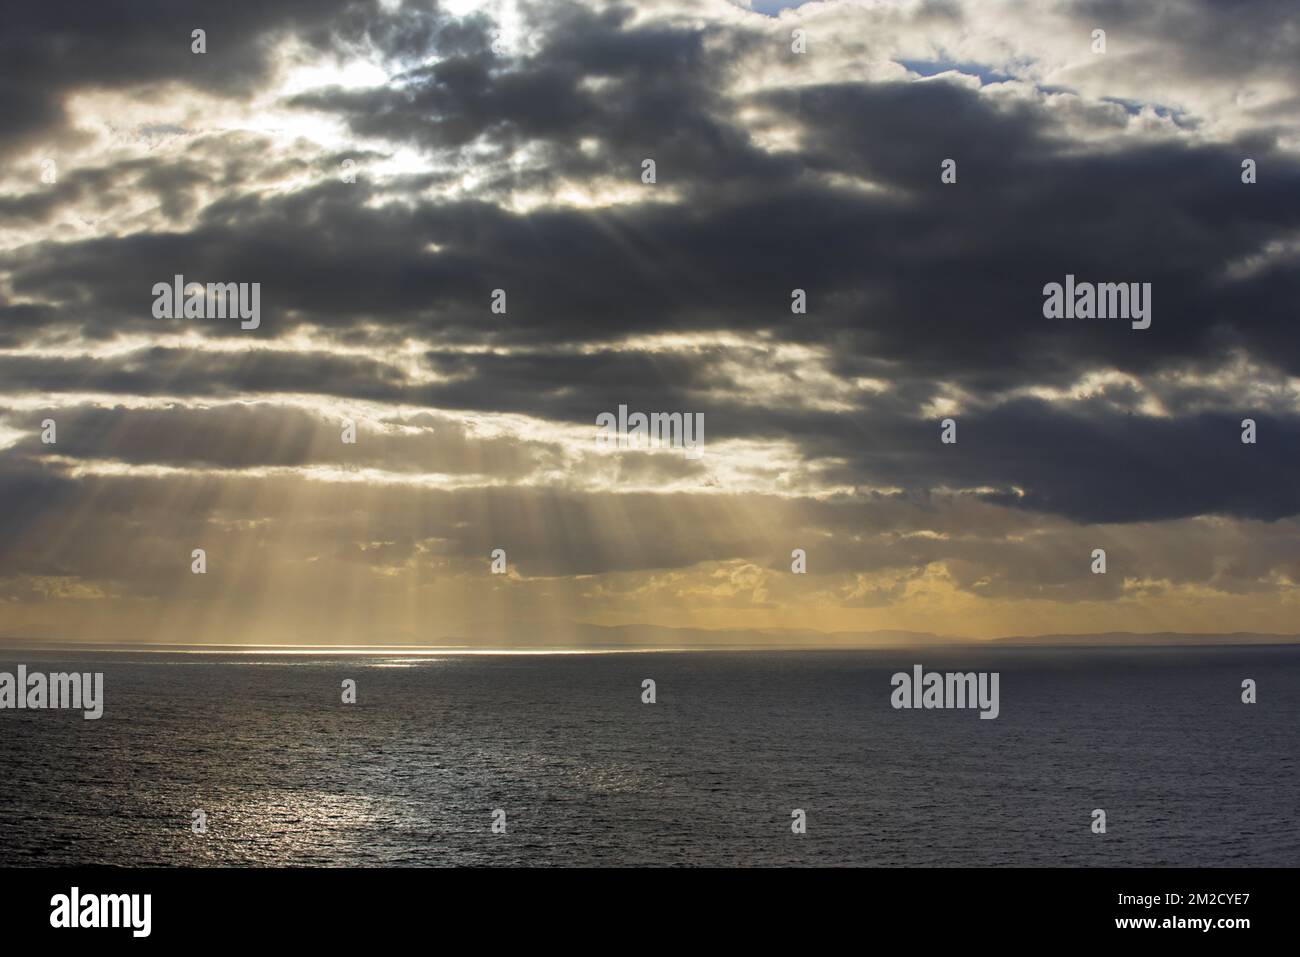 Sun bursting through rain clouds hi-res stock photography and images - Alamy